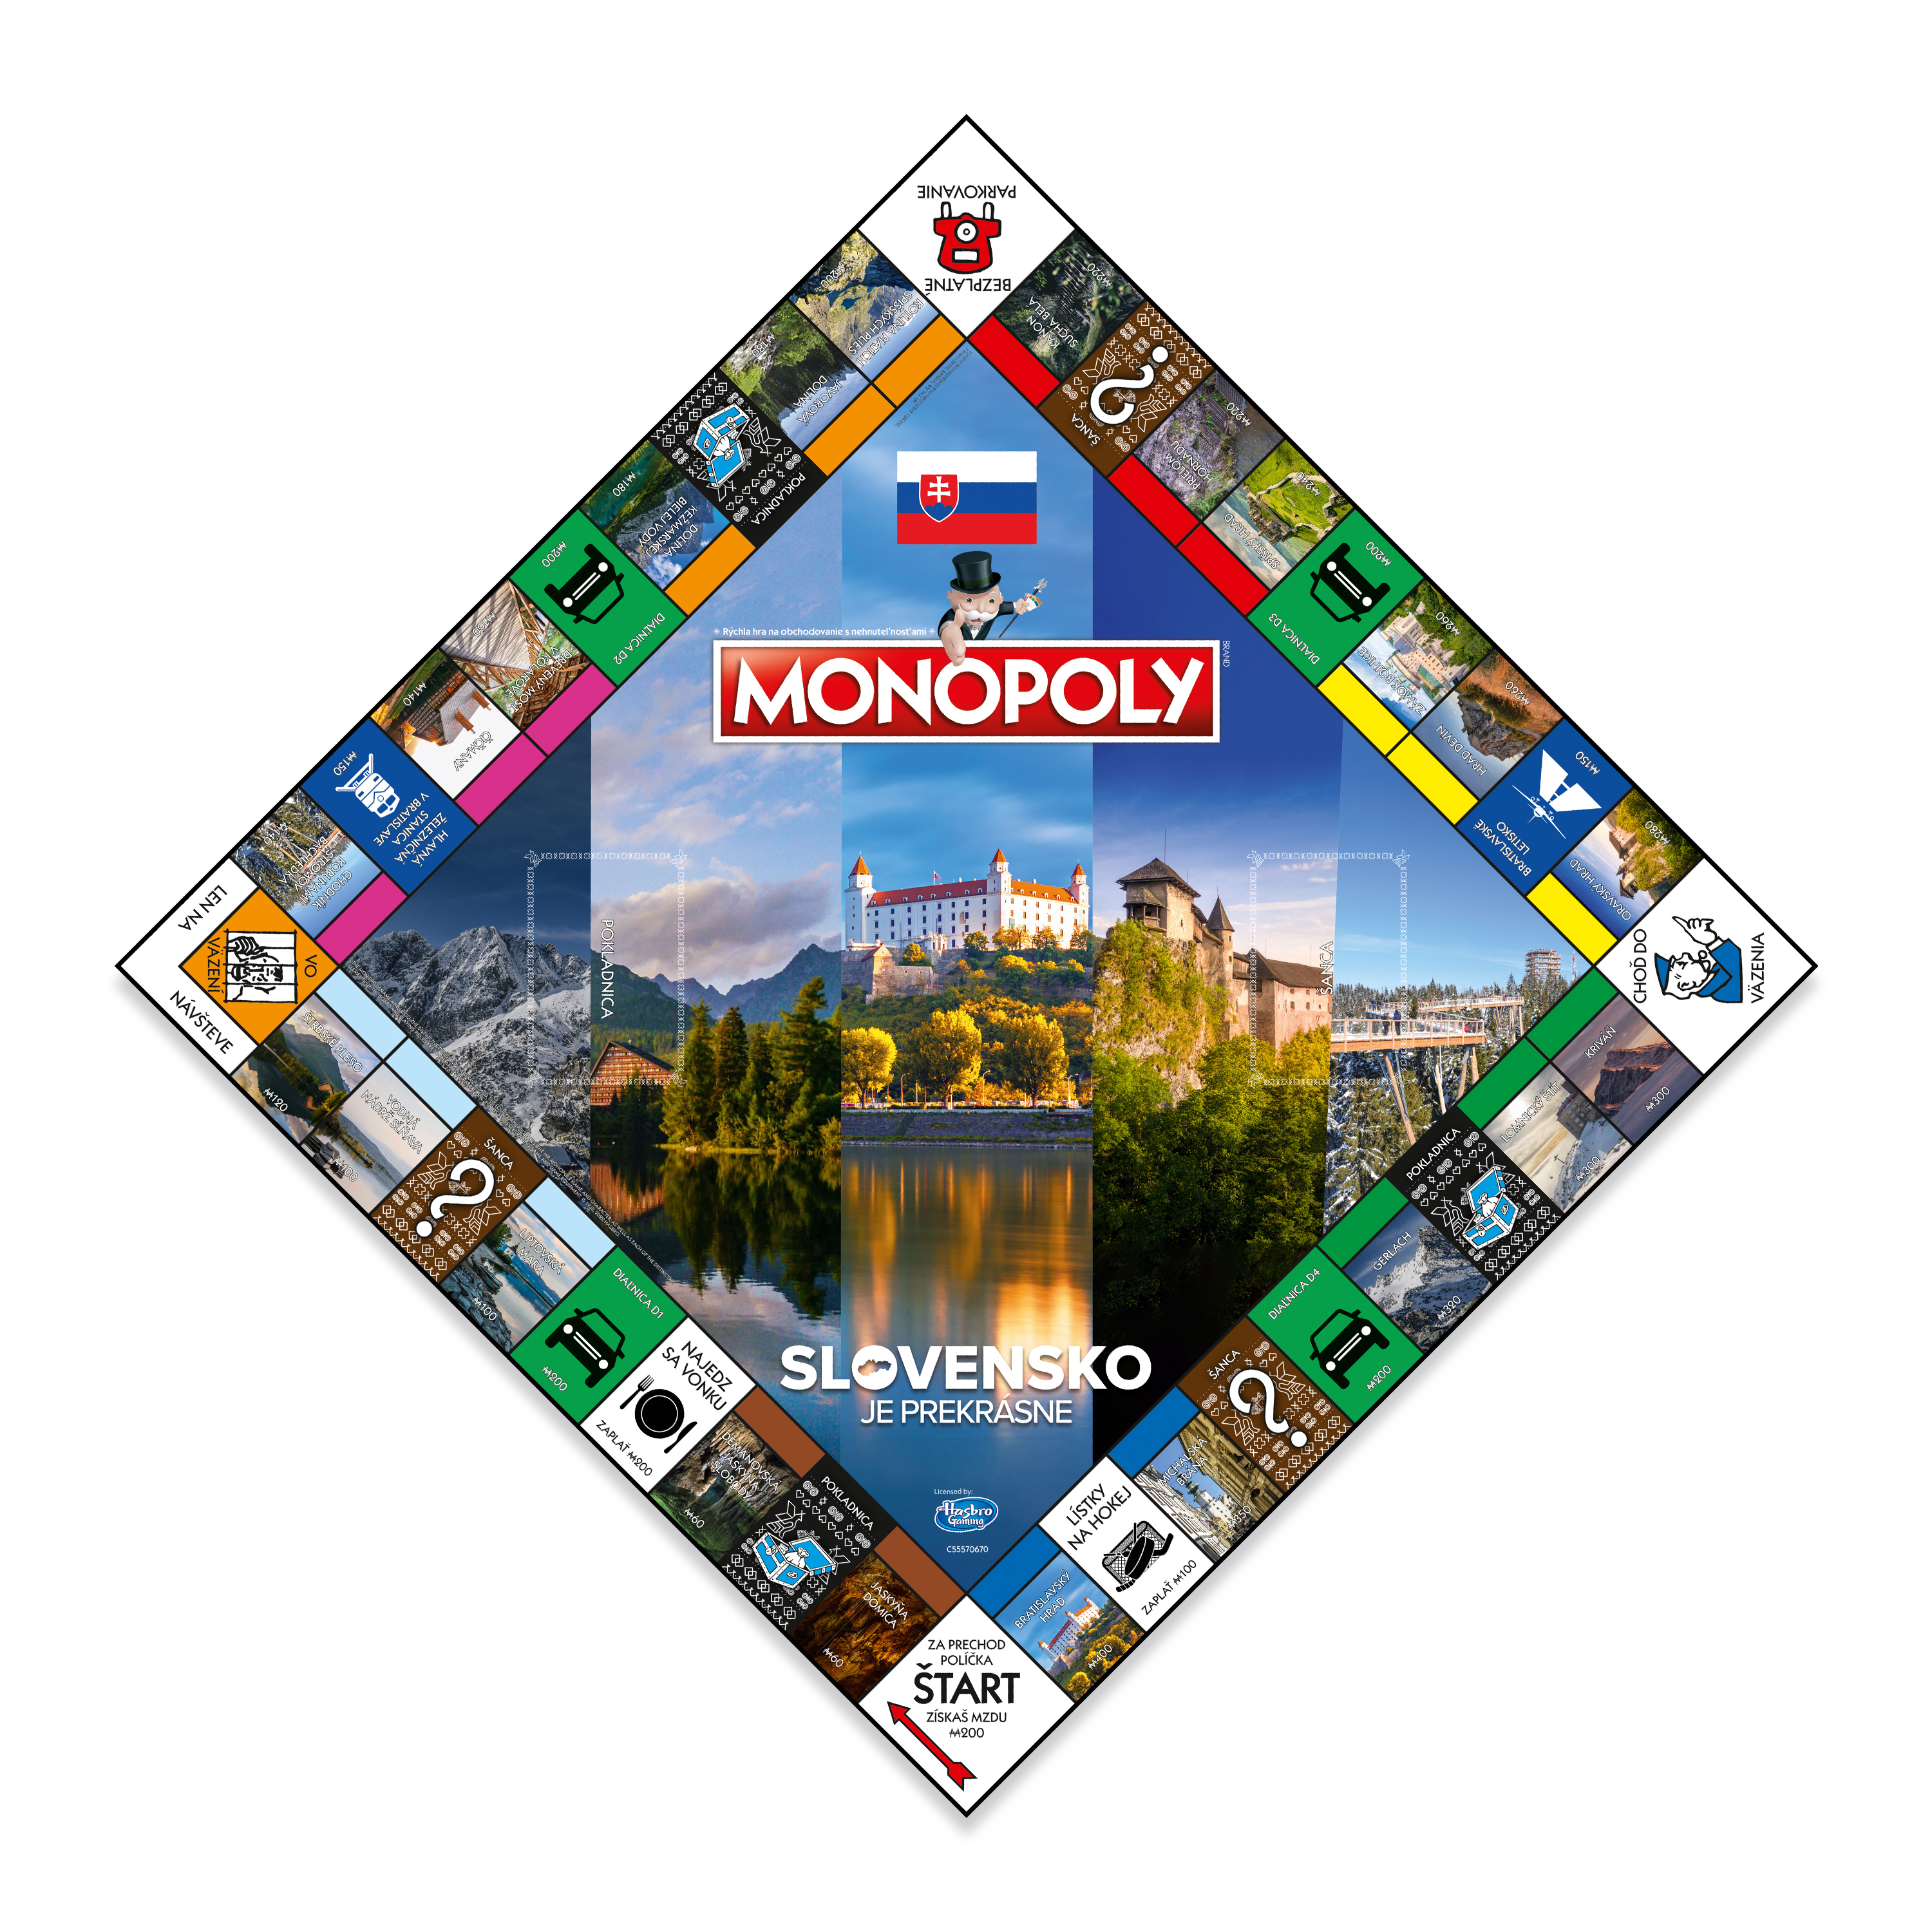 Hra Monopoly Slovensko je prekrásne